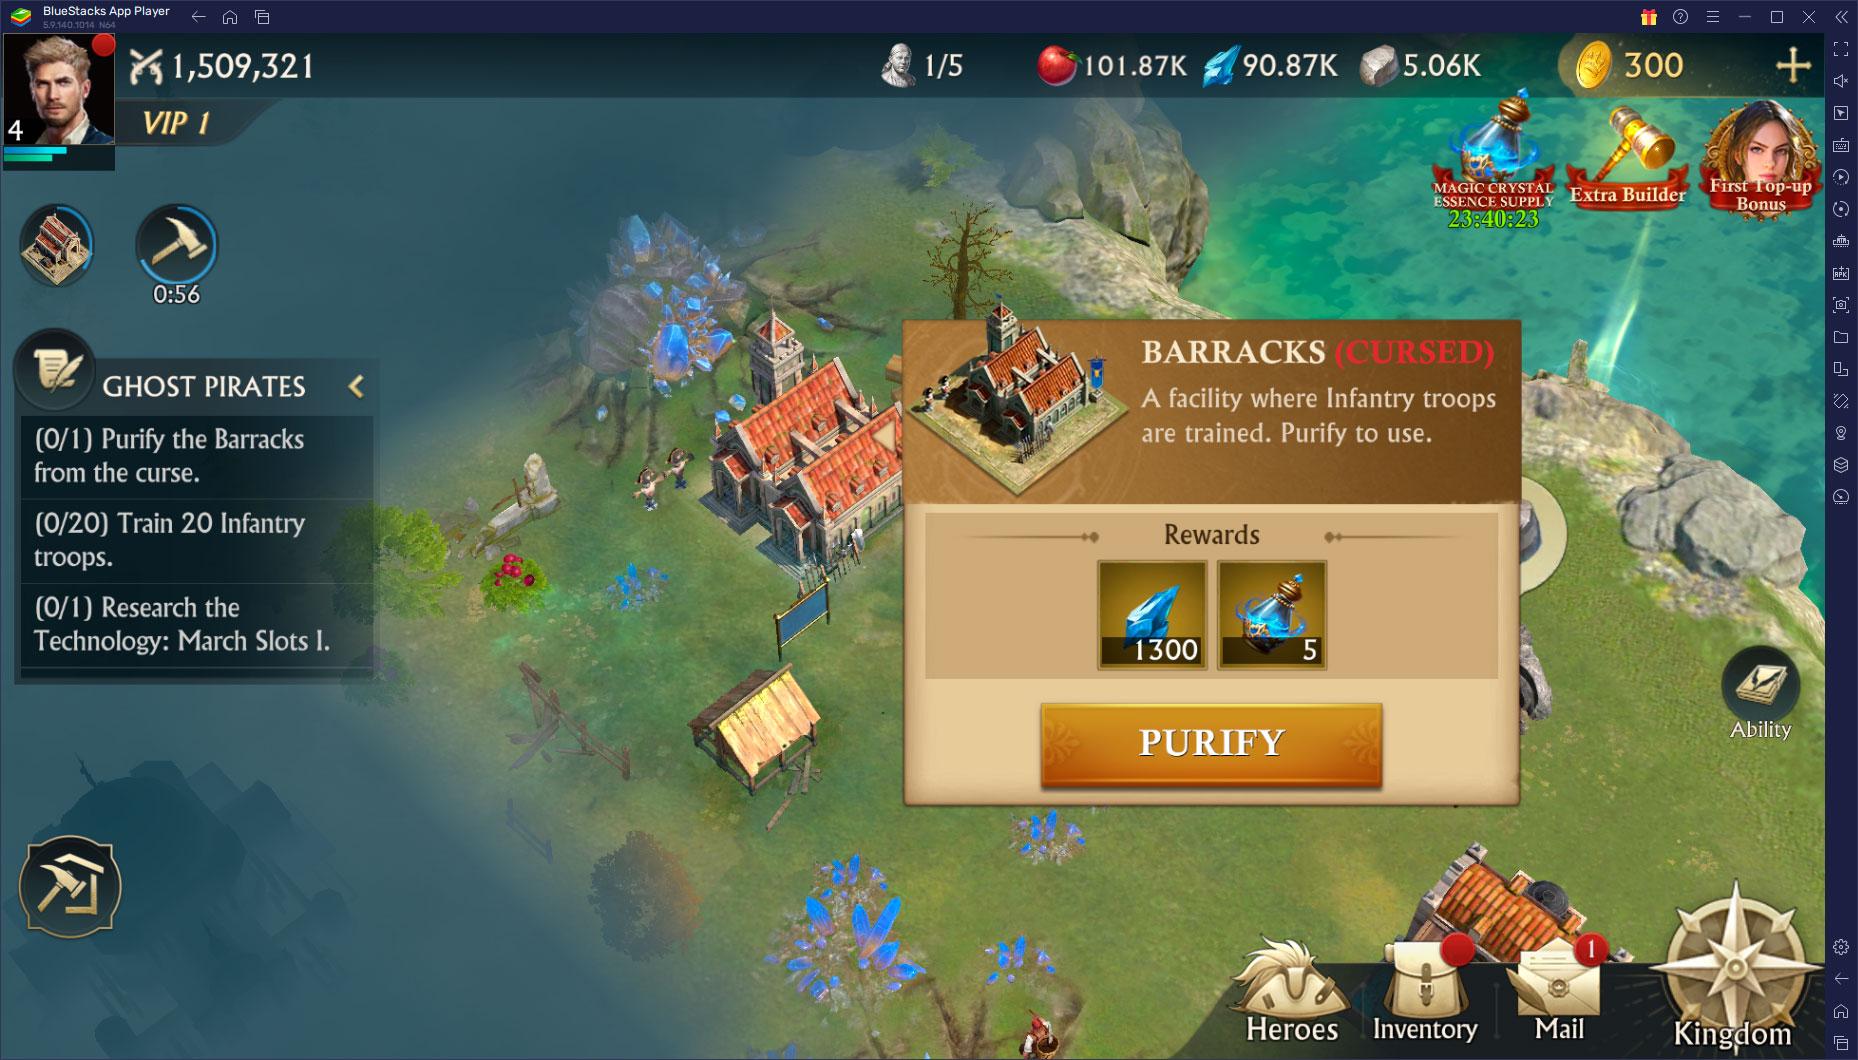 Cùng chơi Misty Continent: Cursed Island trên PC với BlueStacks